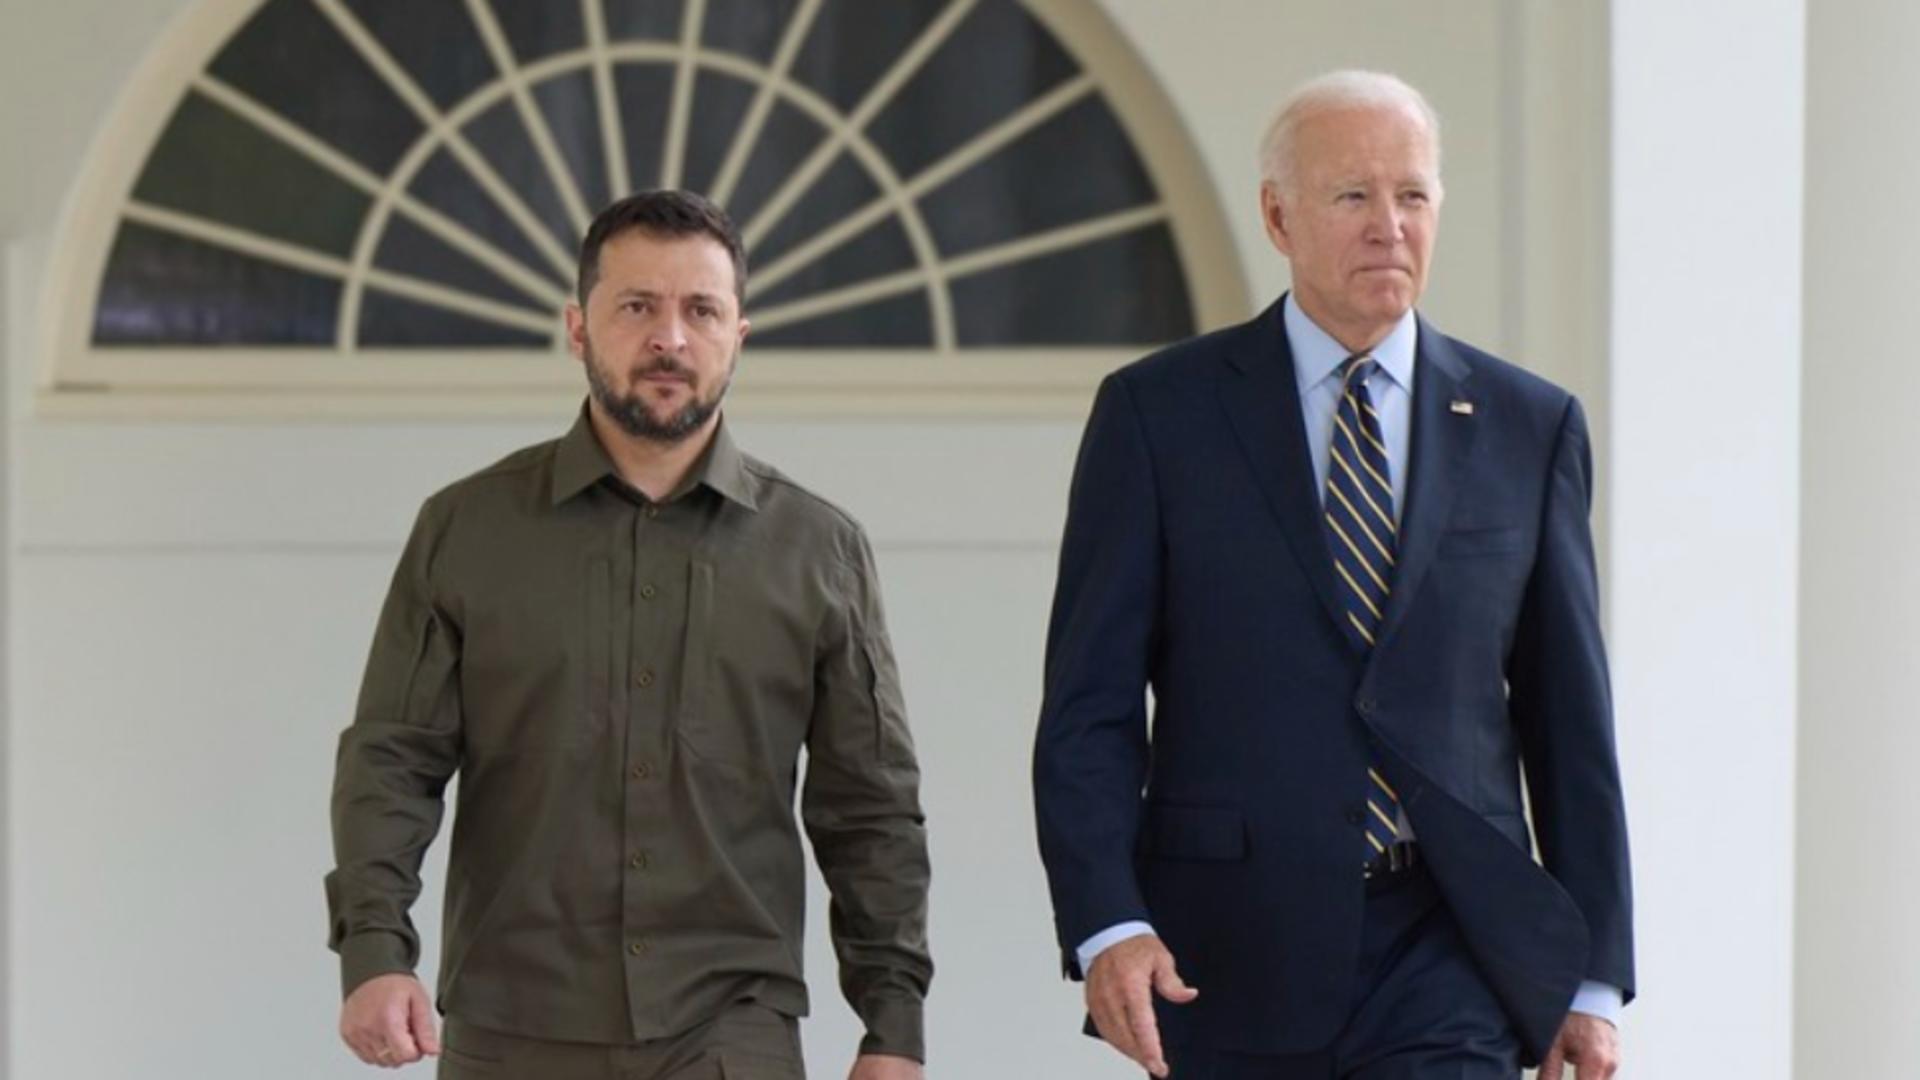 Anunțul SUA care-l înfurie pe Putin, în plin scandal în SUA – Zelenski, invitat oficial de Joe Biden la Casa Albă, pe 12 decembrie